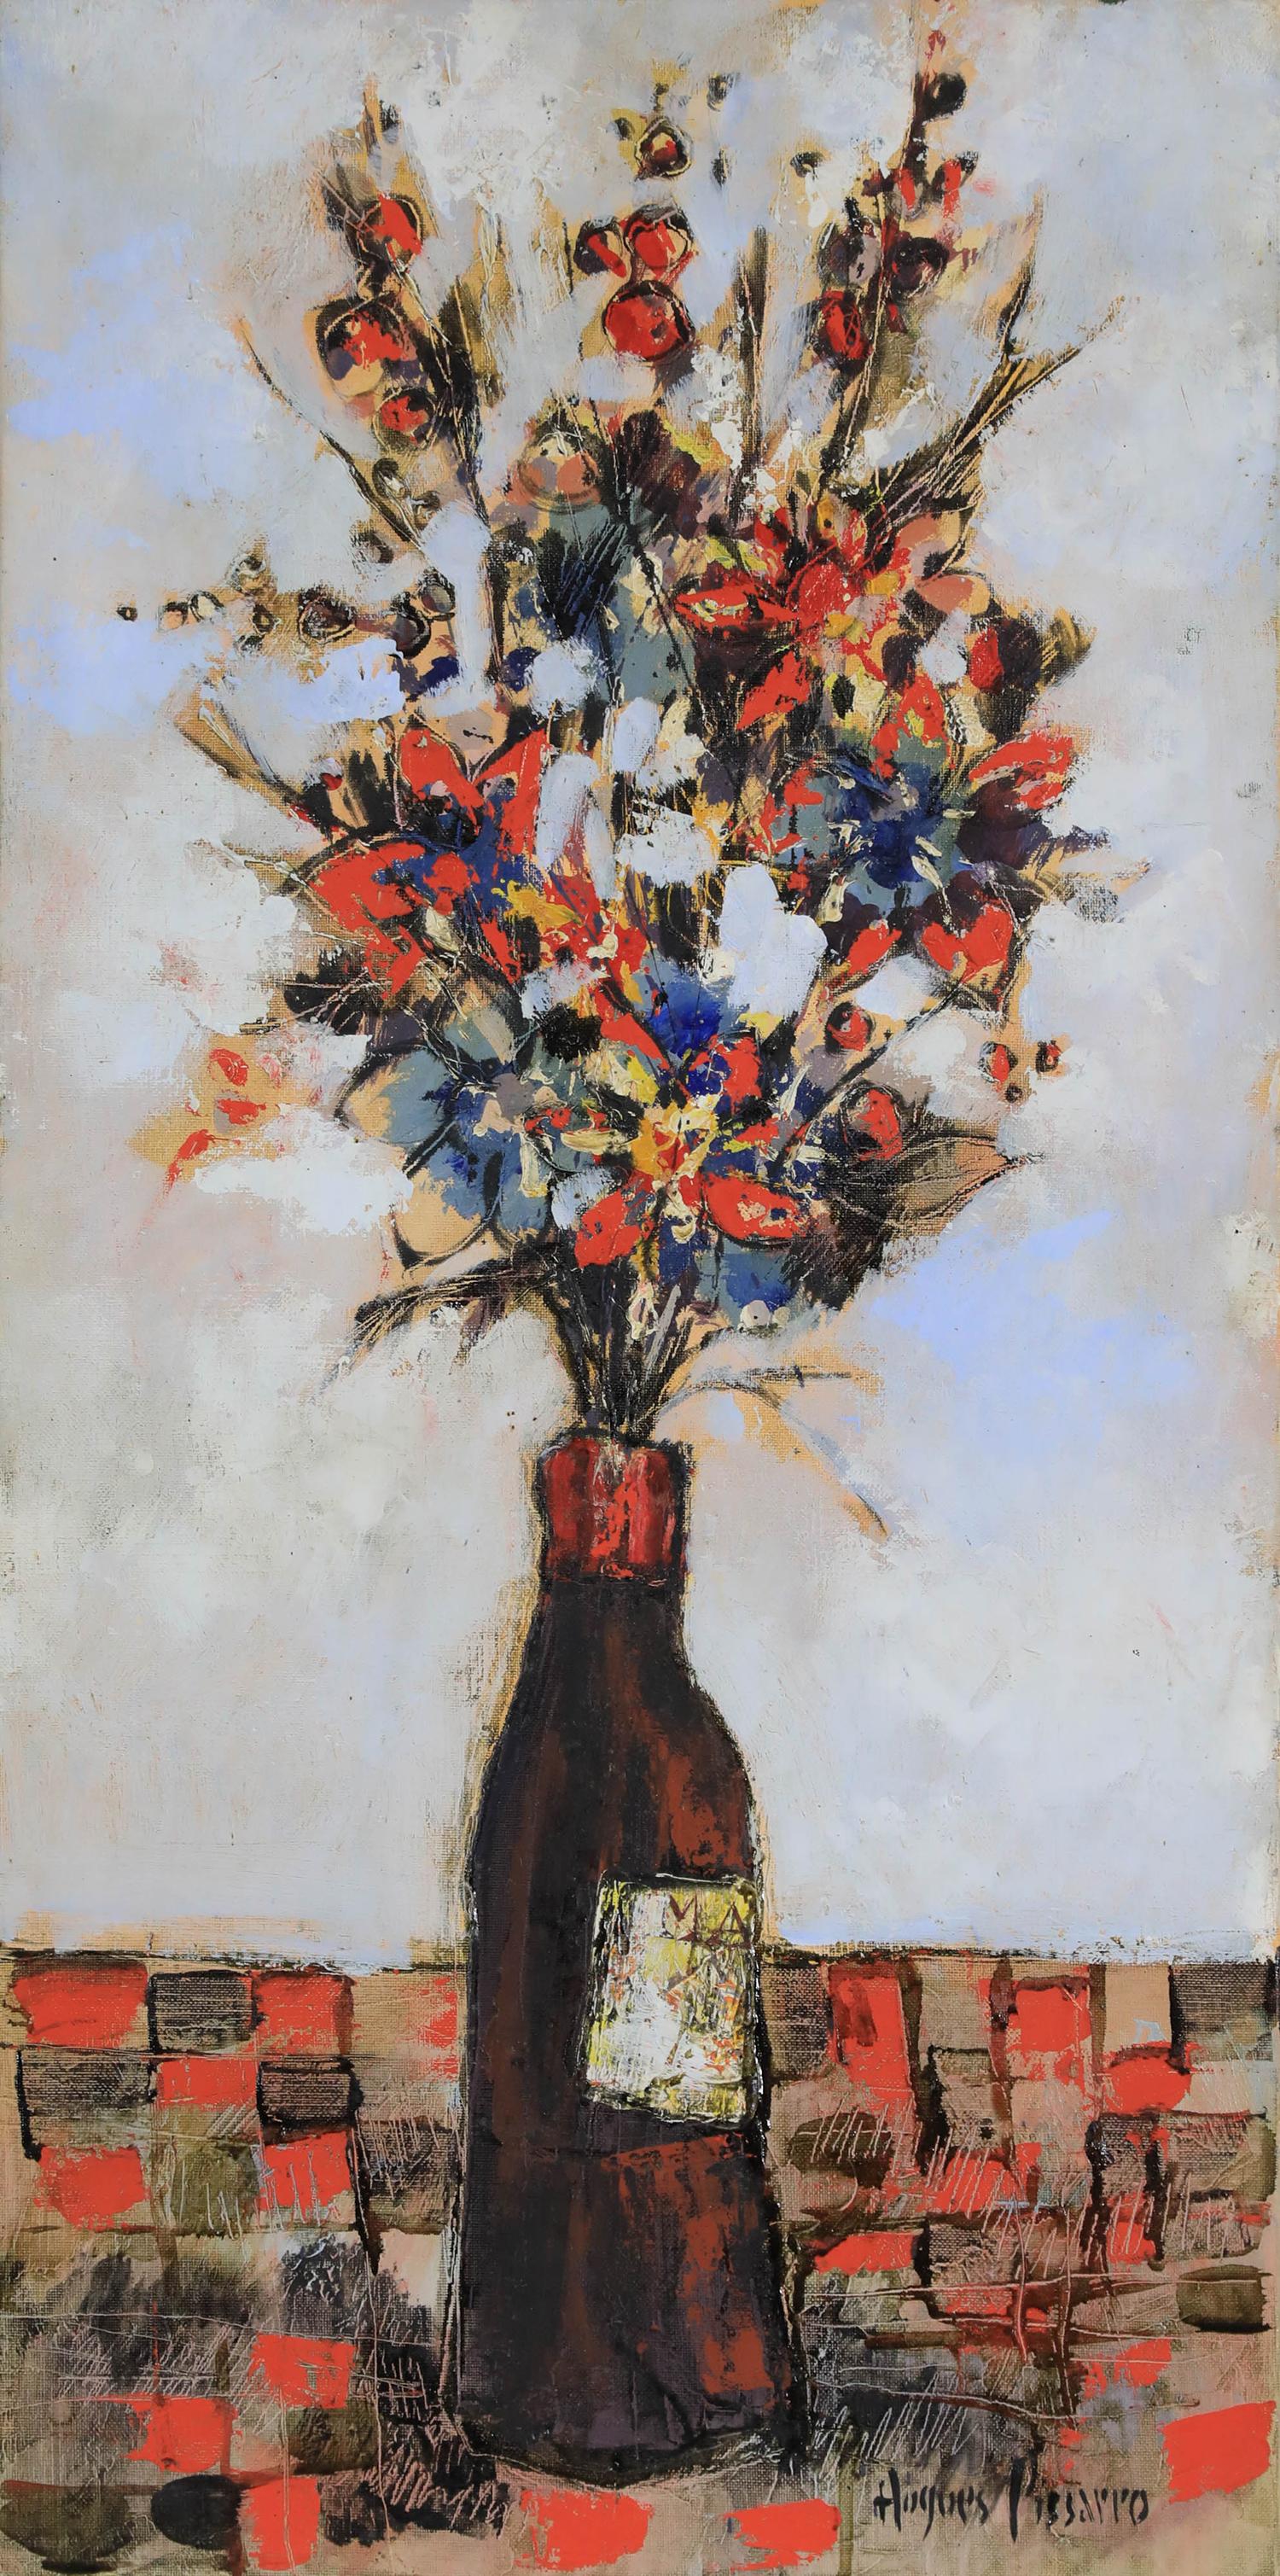 Bouquet by Hugues Pissarro dit Pomié - Contemporary still life painting